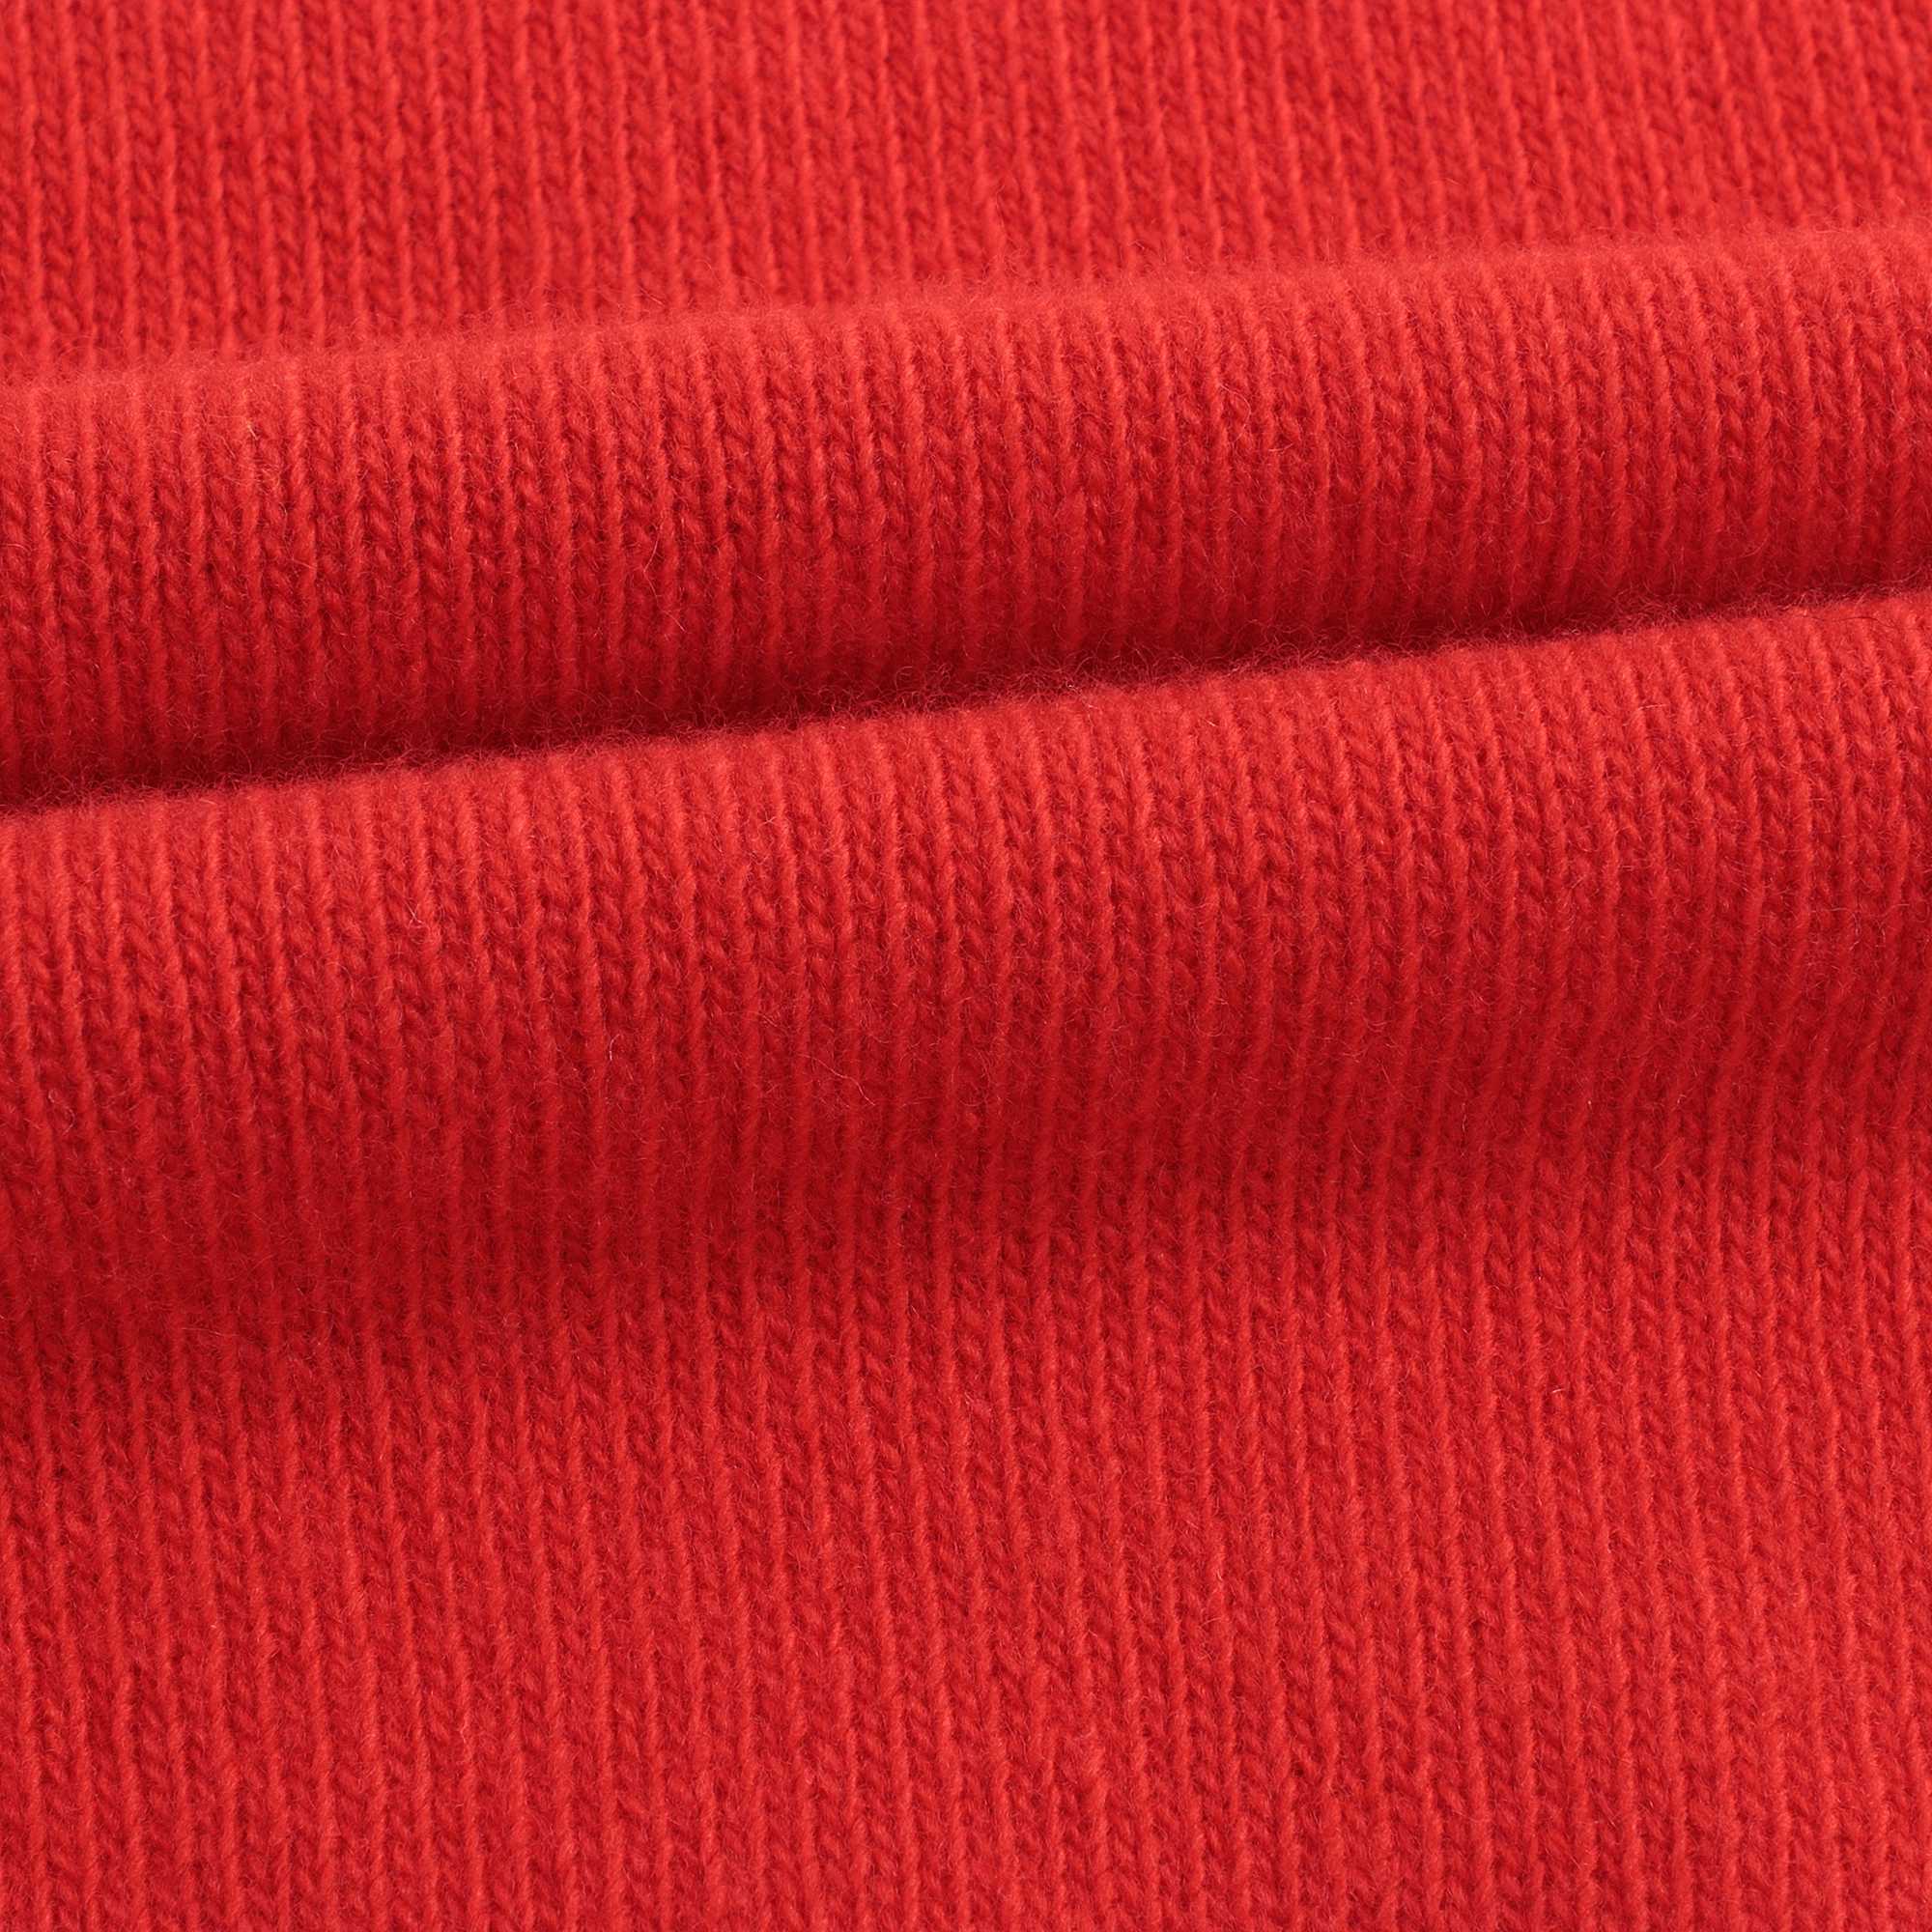 Boys Red Pattern Wool Sweater